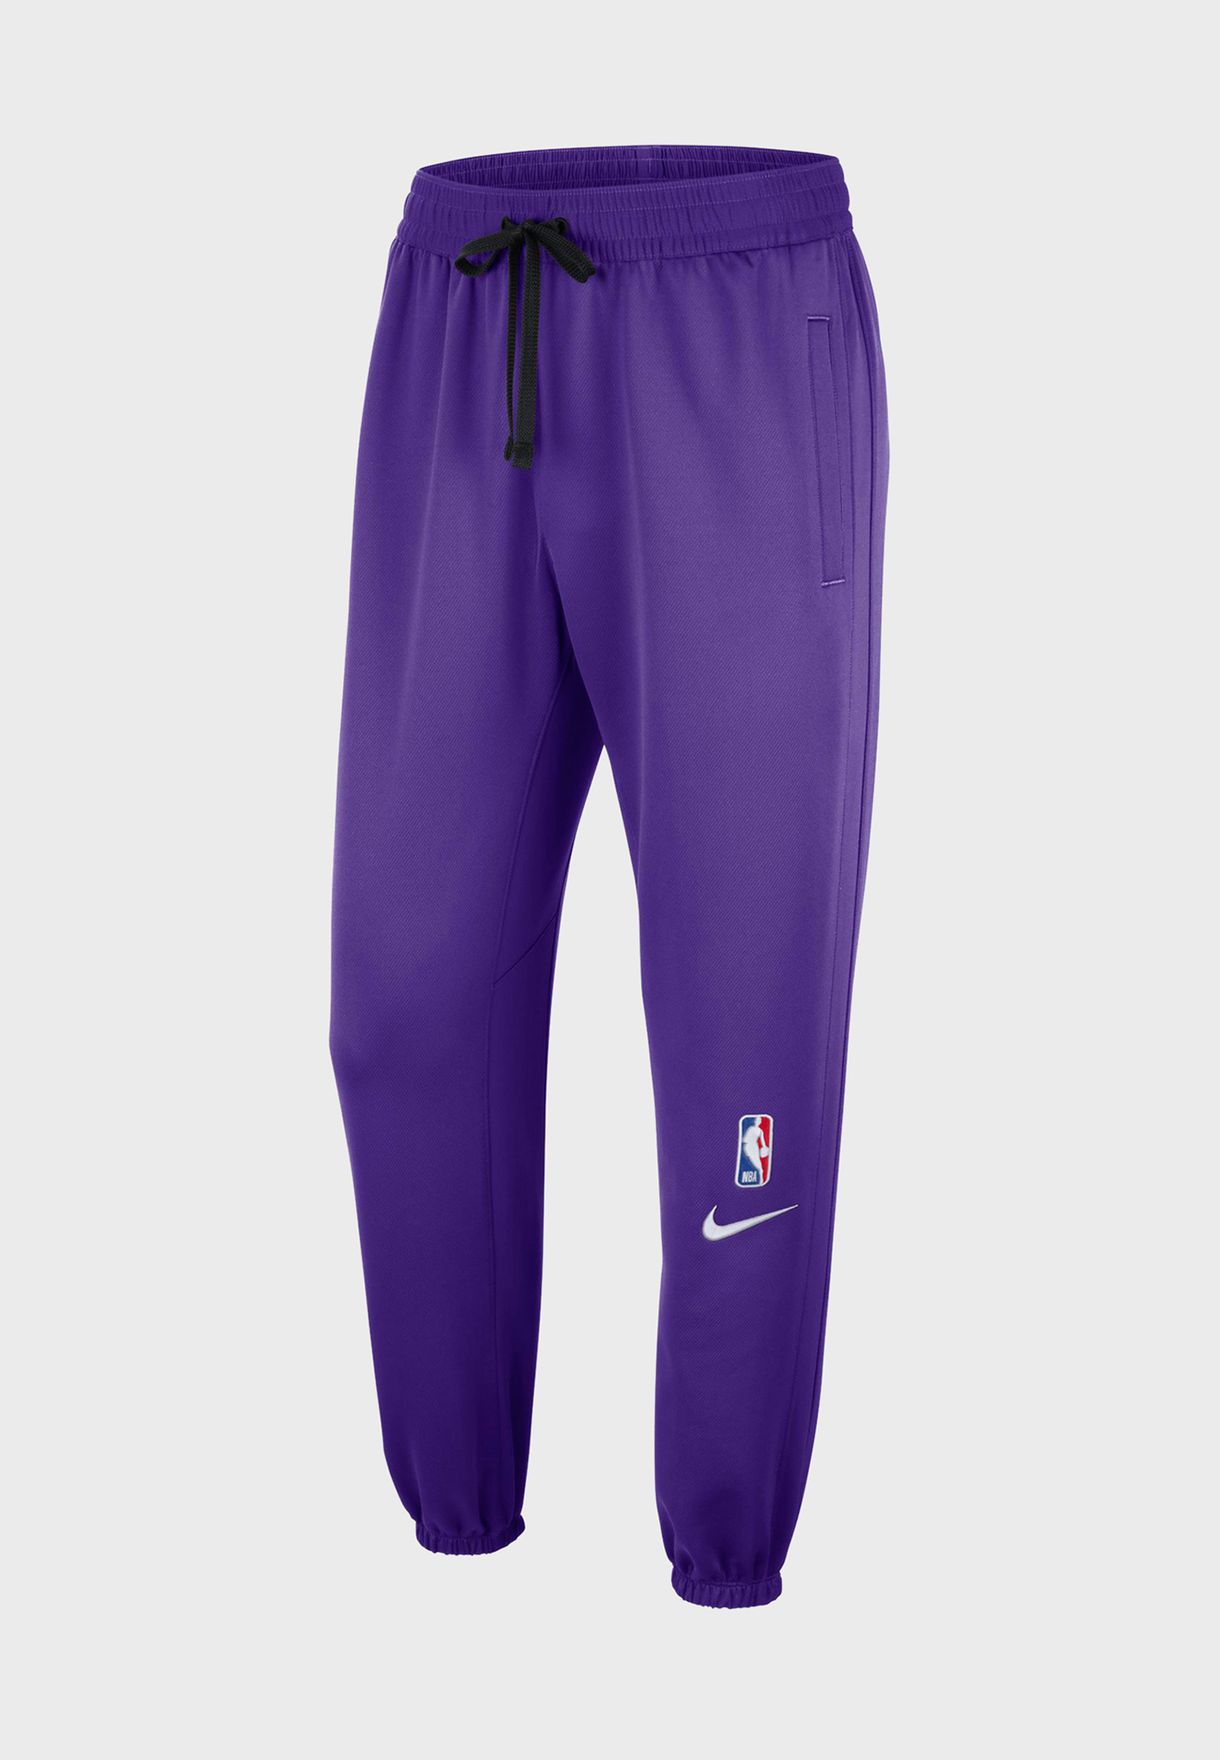 Buy Nike purple Los Angeles Lakers 